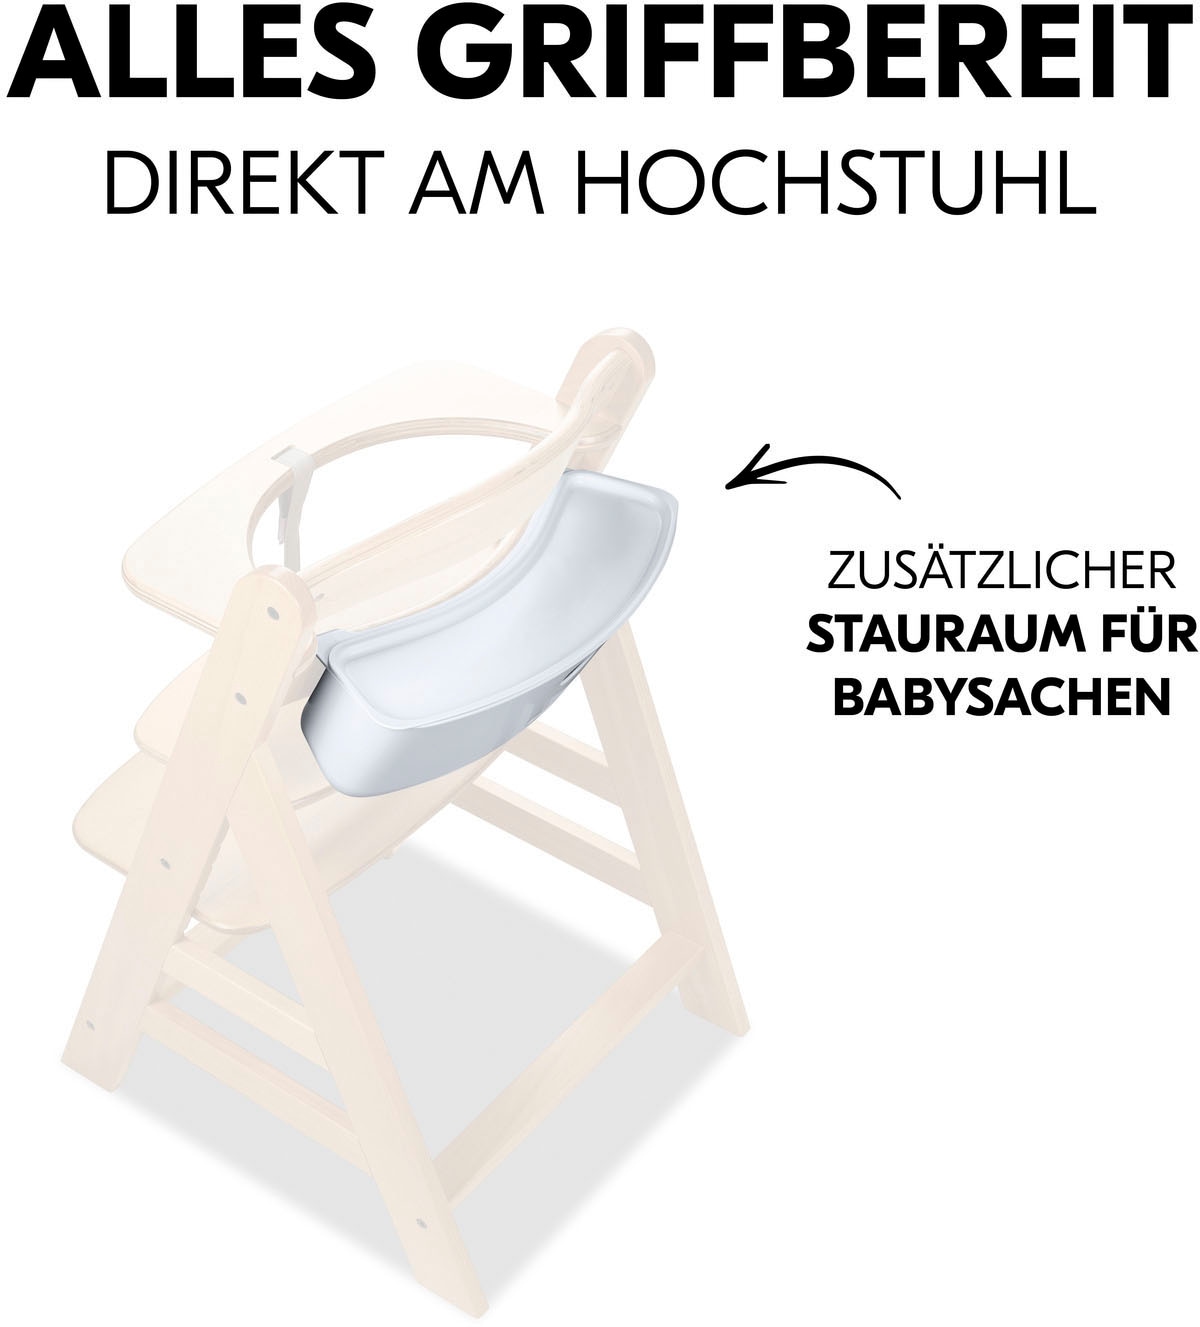 Hauck Aufbewahrungsbox »Highchair Box S, white«, für Hochstühle